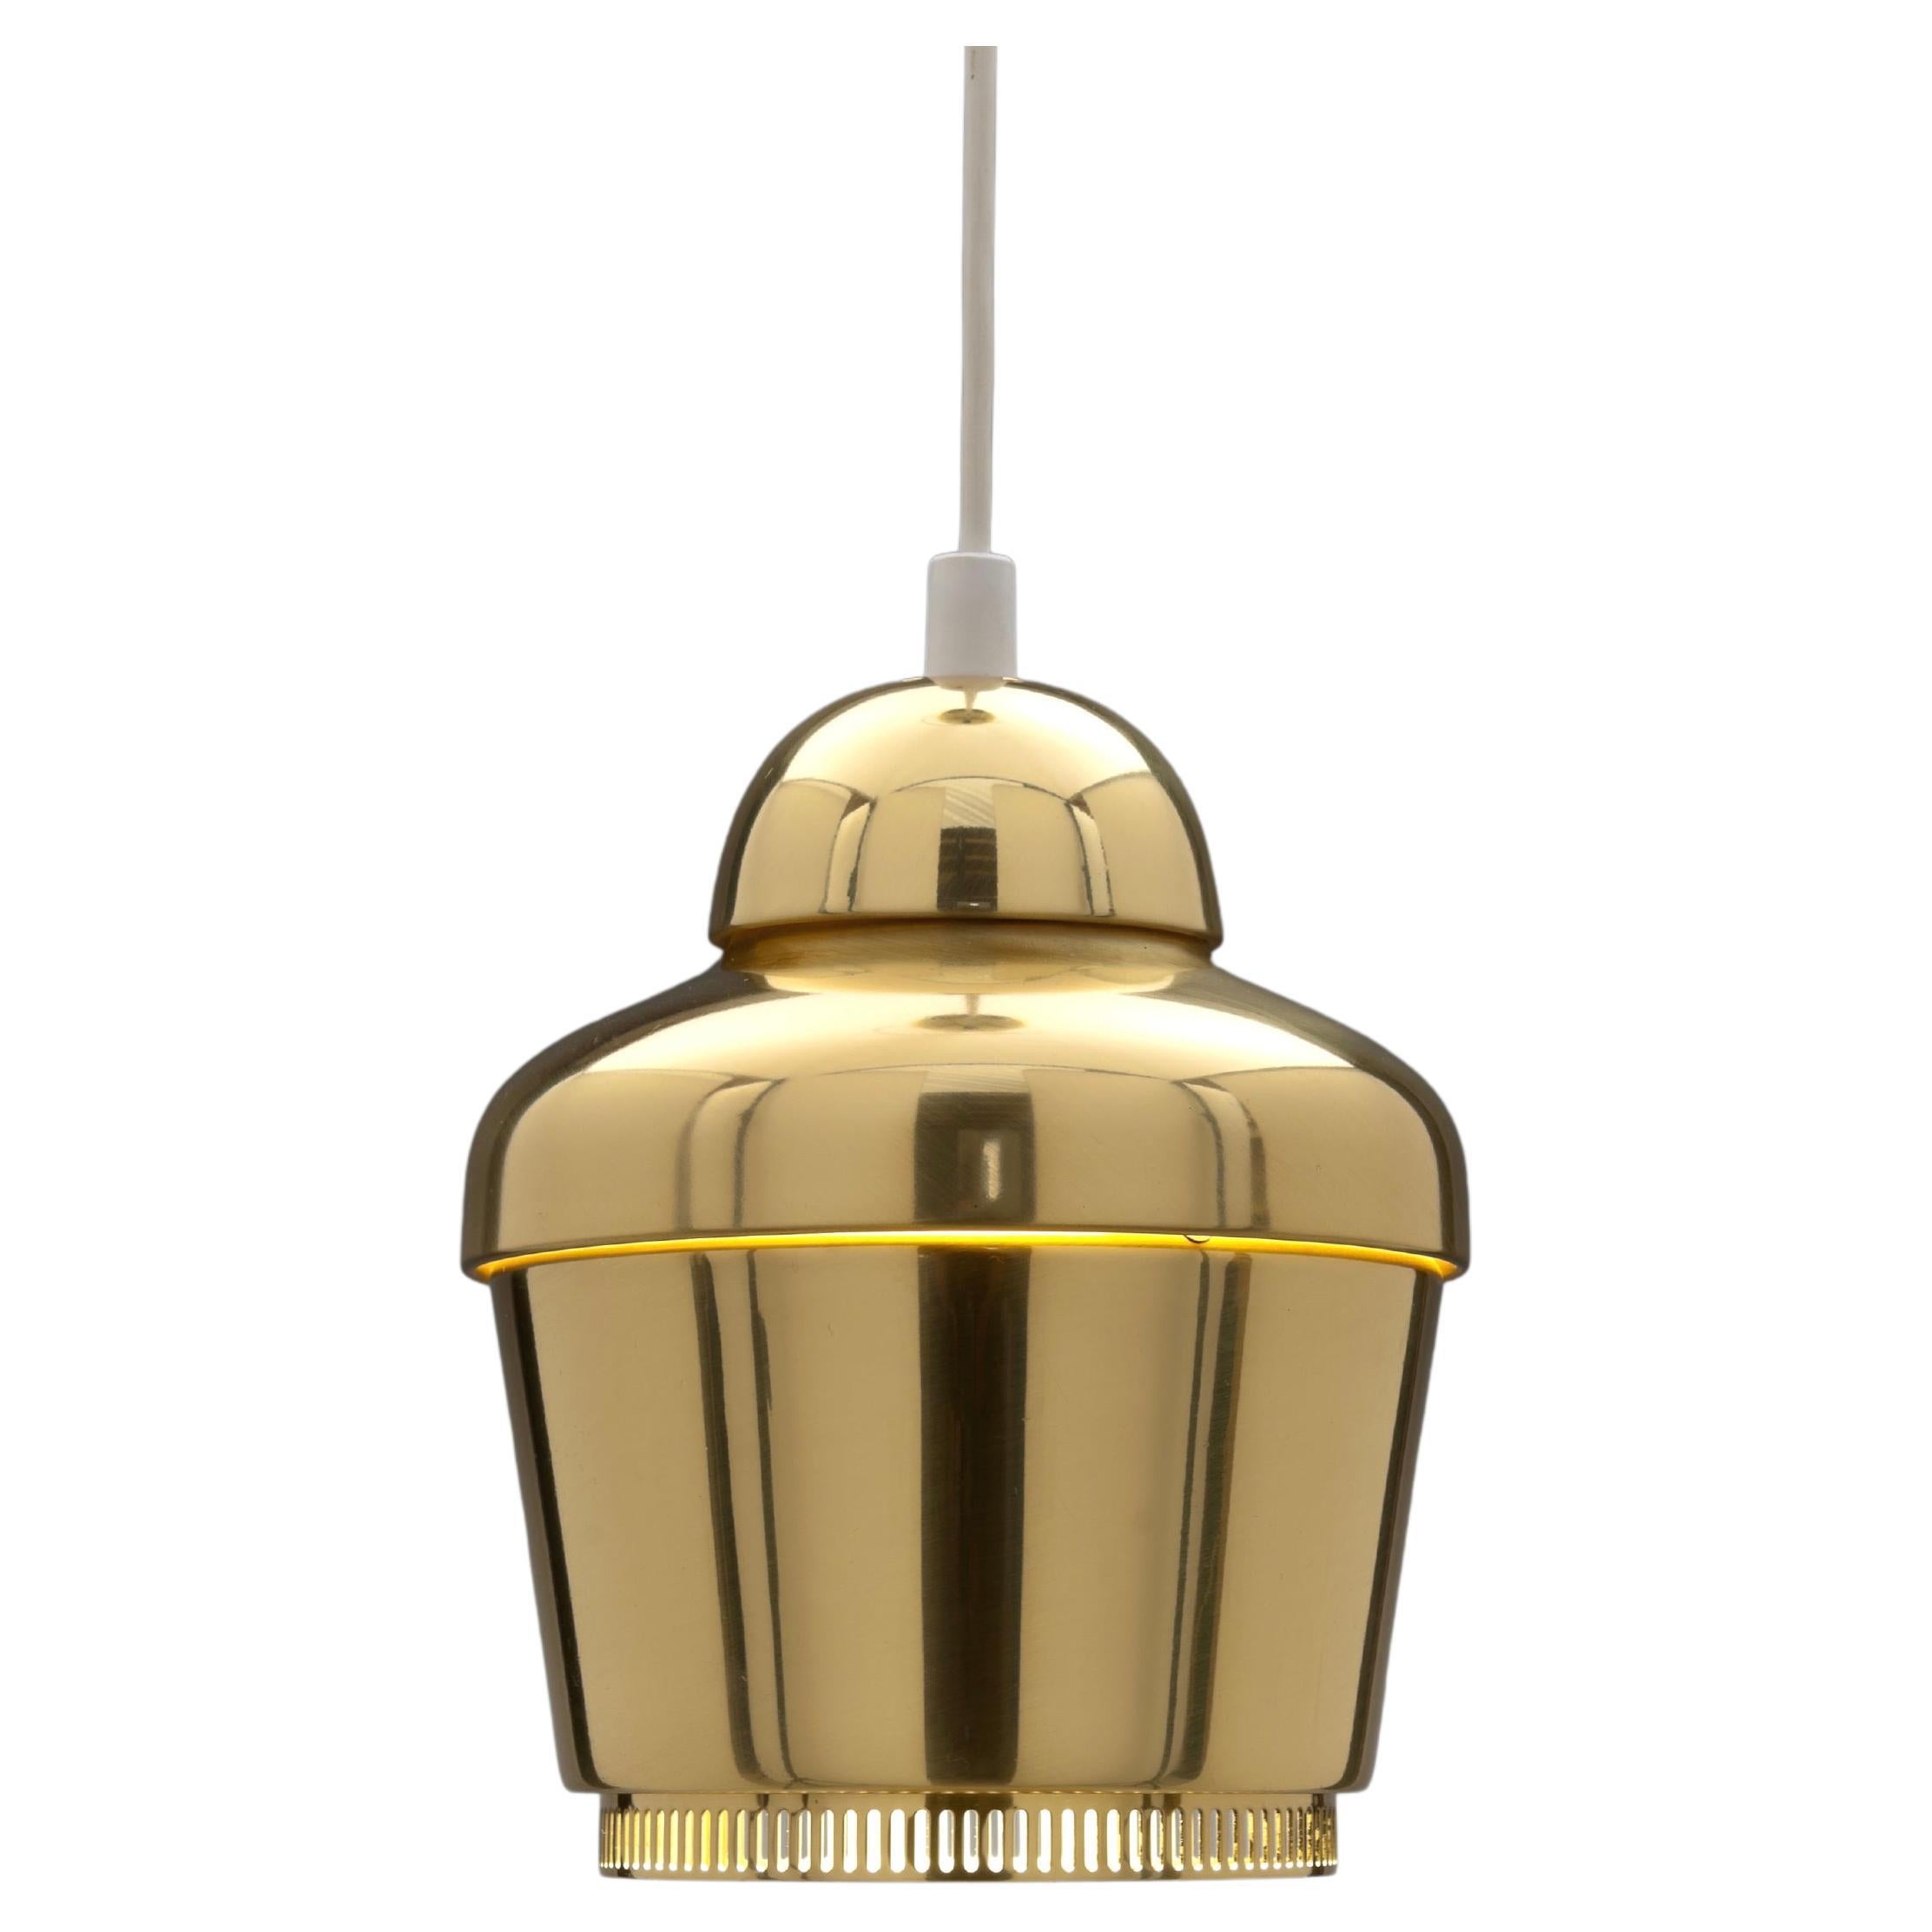 Brass 'Kultakello' Model A 330 'Golden Bell' Pendant by Alvar Aalto 'Rare Model'